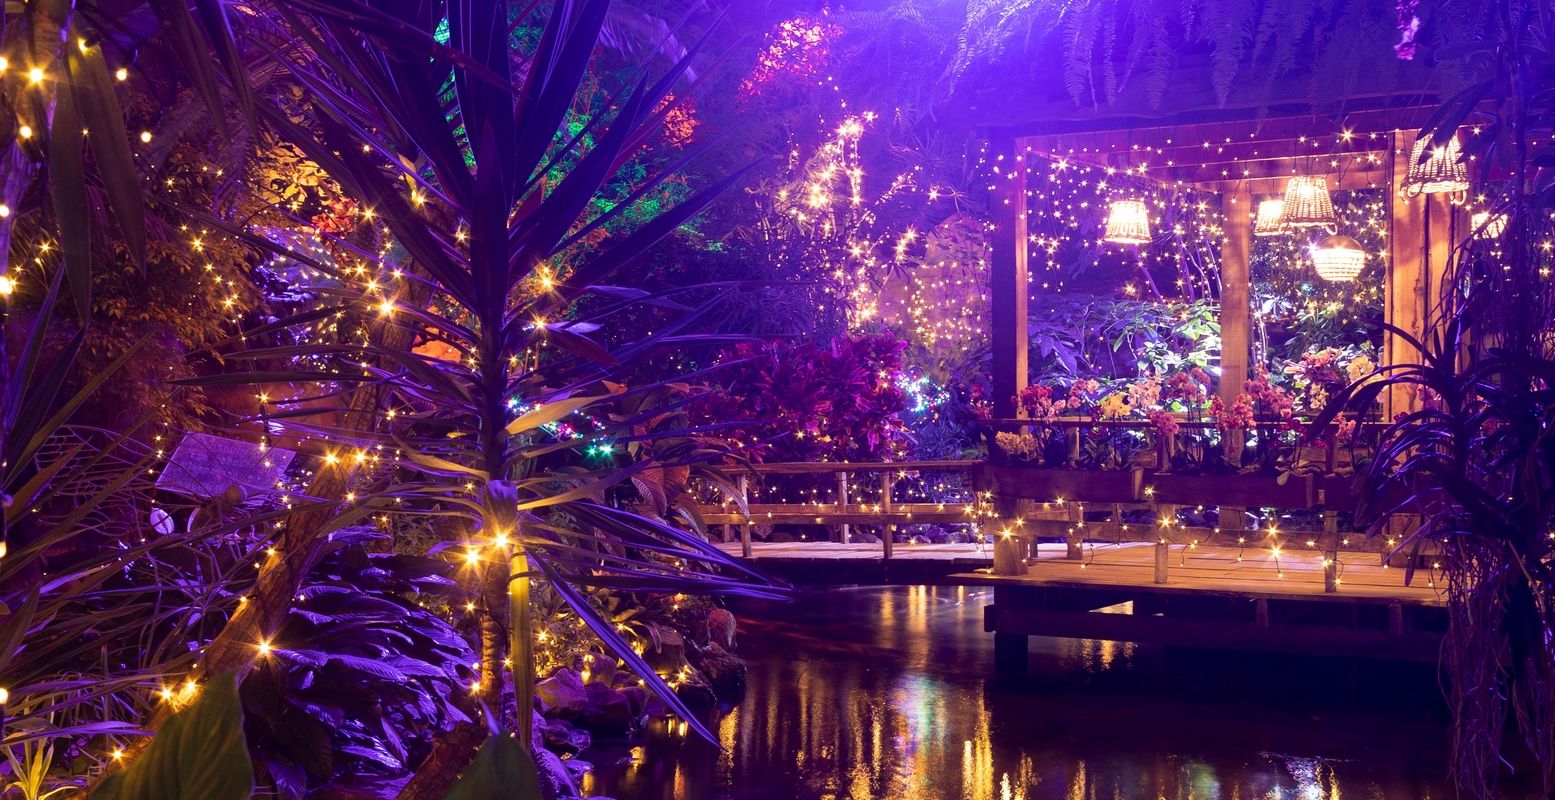 Beleef de kerstsfeer in een jungle, betoverend mooi! Vooral tijdens de kaarsjesavonden. Foto: Junglepark de Orchideeën Hoeve